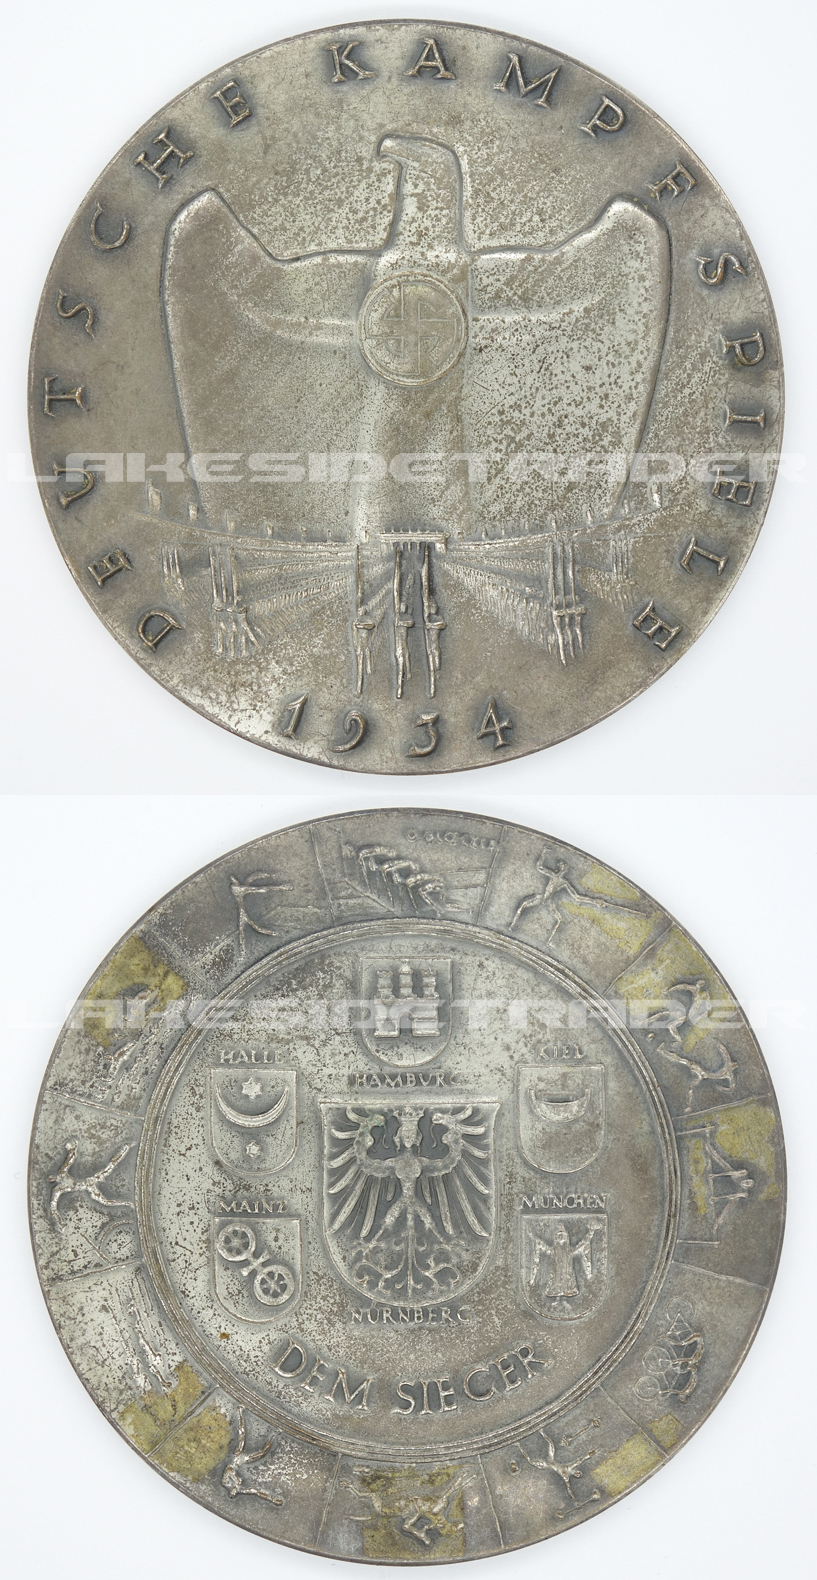 Deutsche Kampfspiele Winners Table Medal 1934